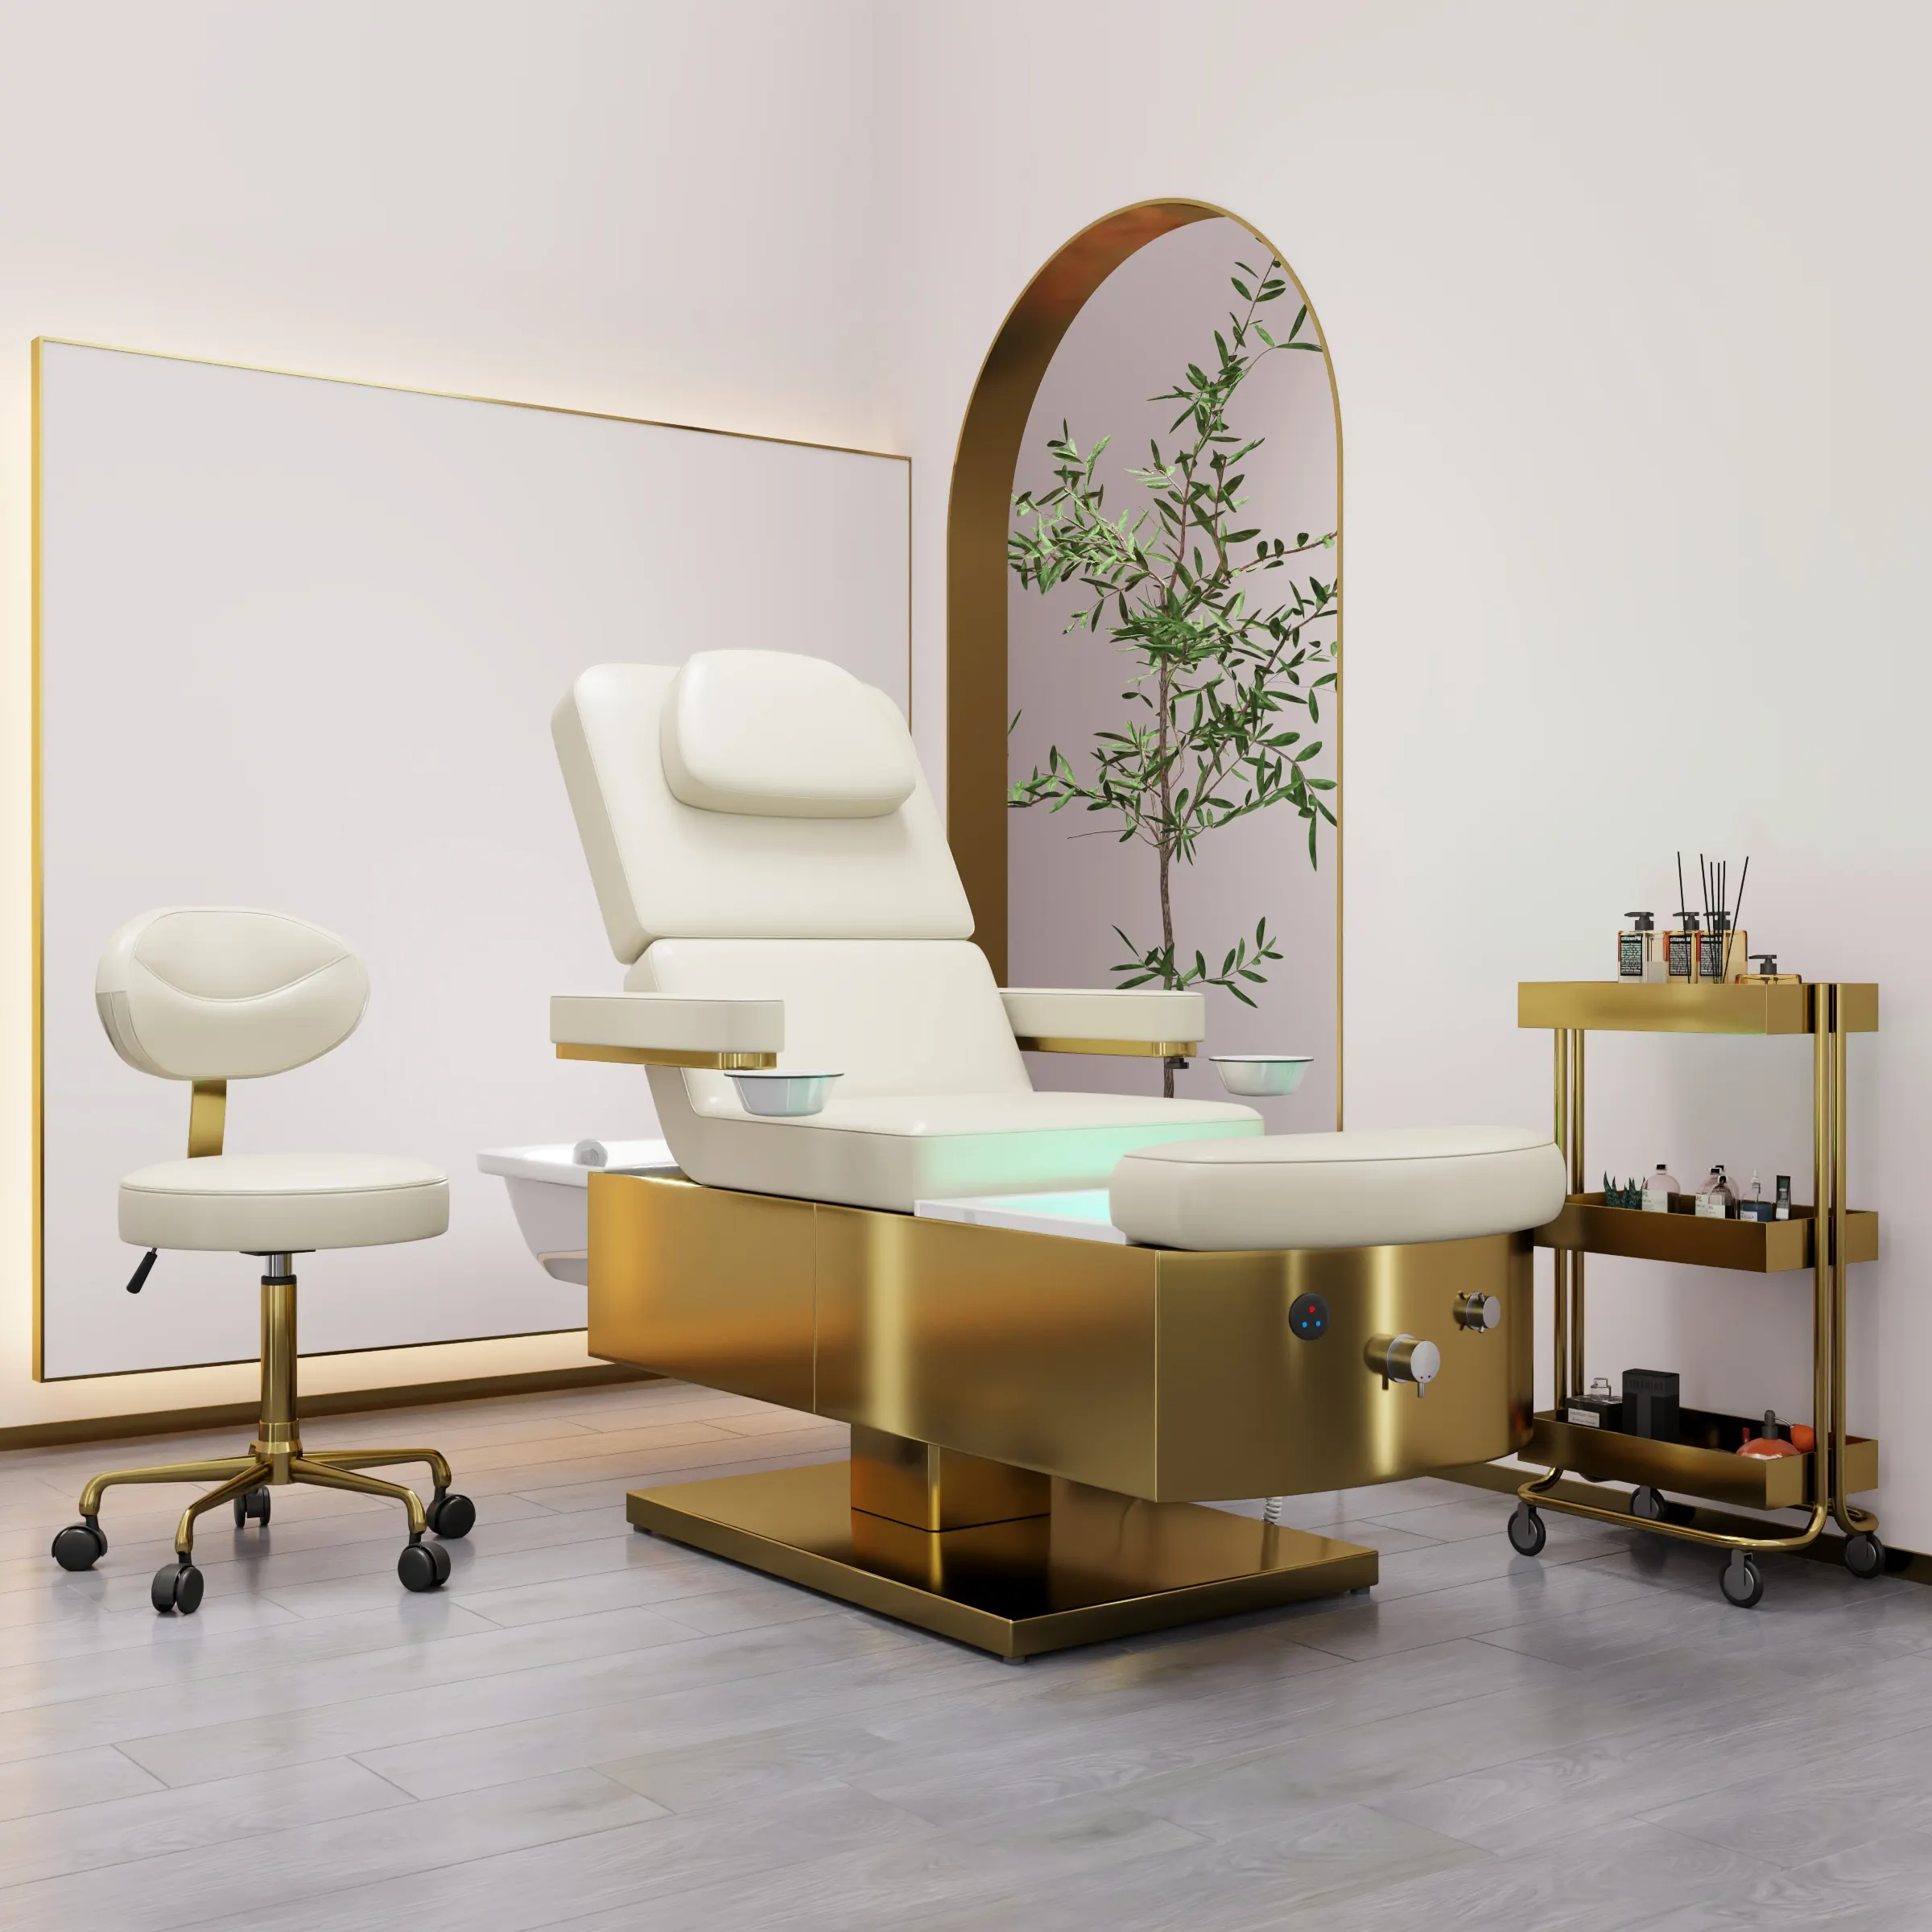 Hochey Salon Spa nước lưu thông tóc rửa ghế massage chân dầu gội giường